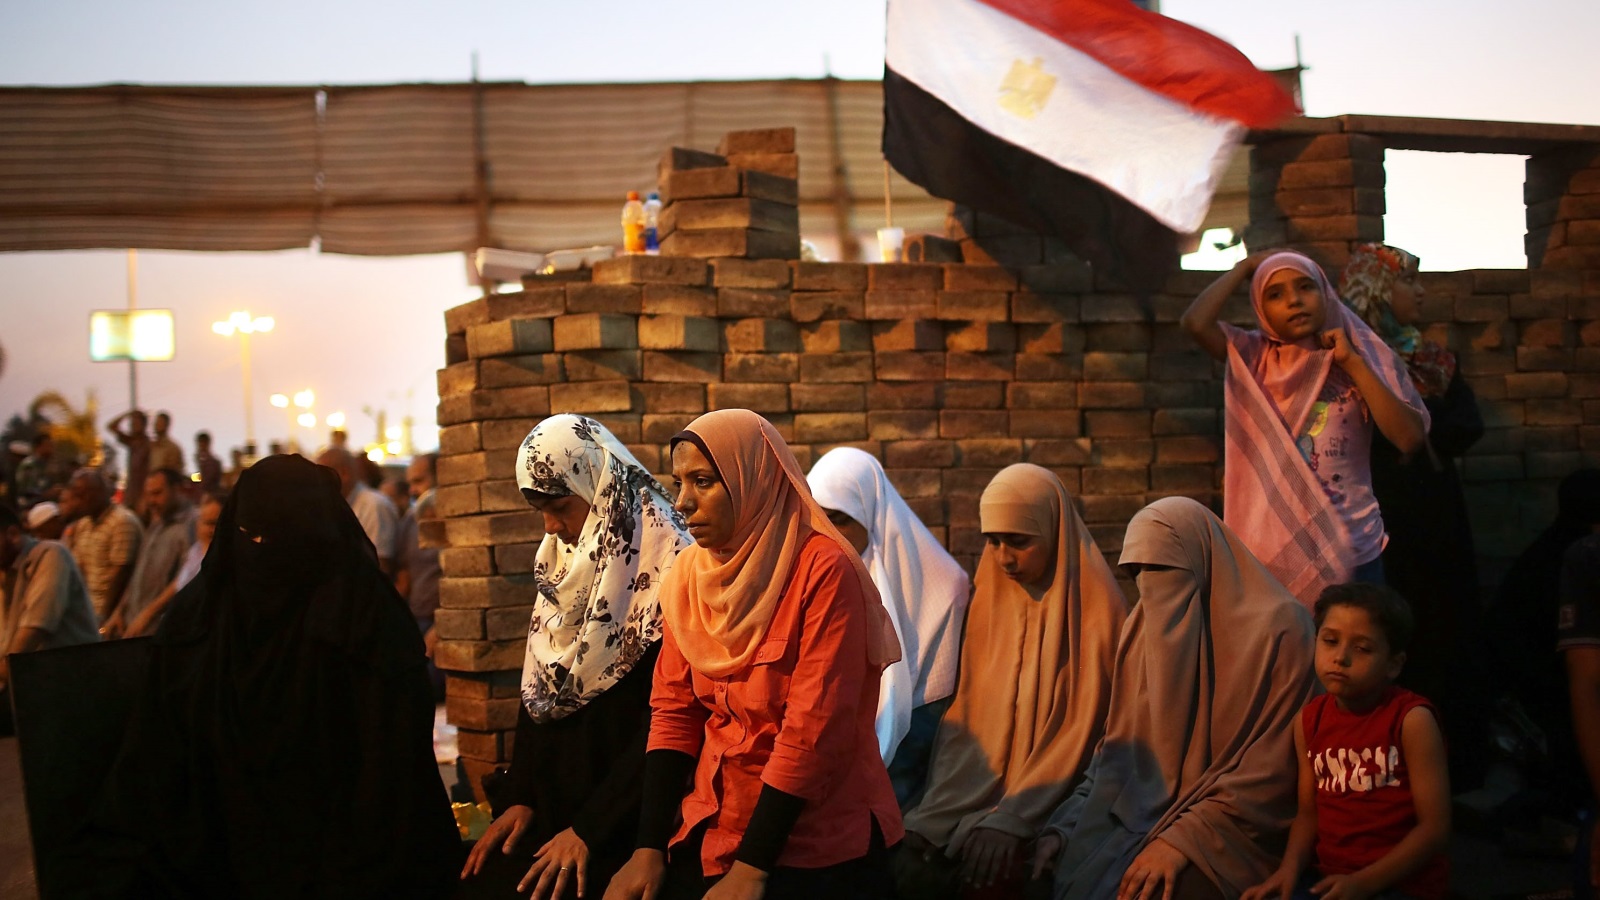 يعد حيز الإخوان بيئة حاضنة للمرأة، خاصة الملتزمات دينيا والمحافظات اجتماعيا في أقاليم مصر المختلفة